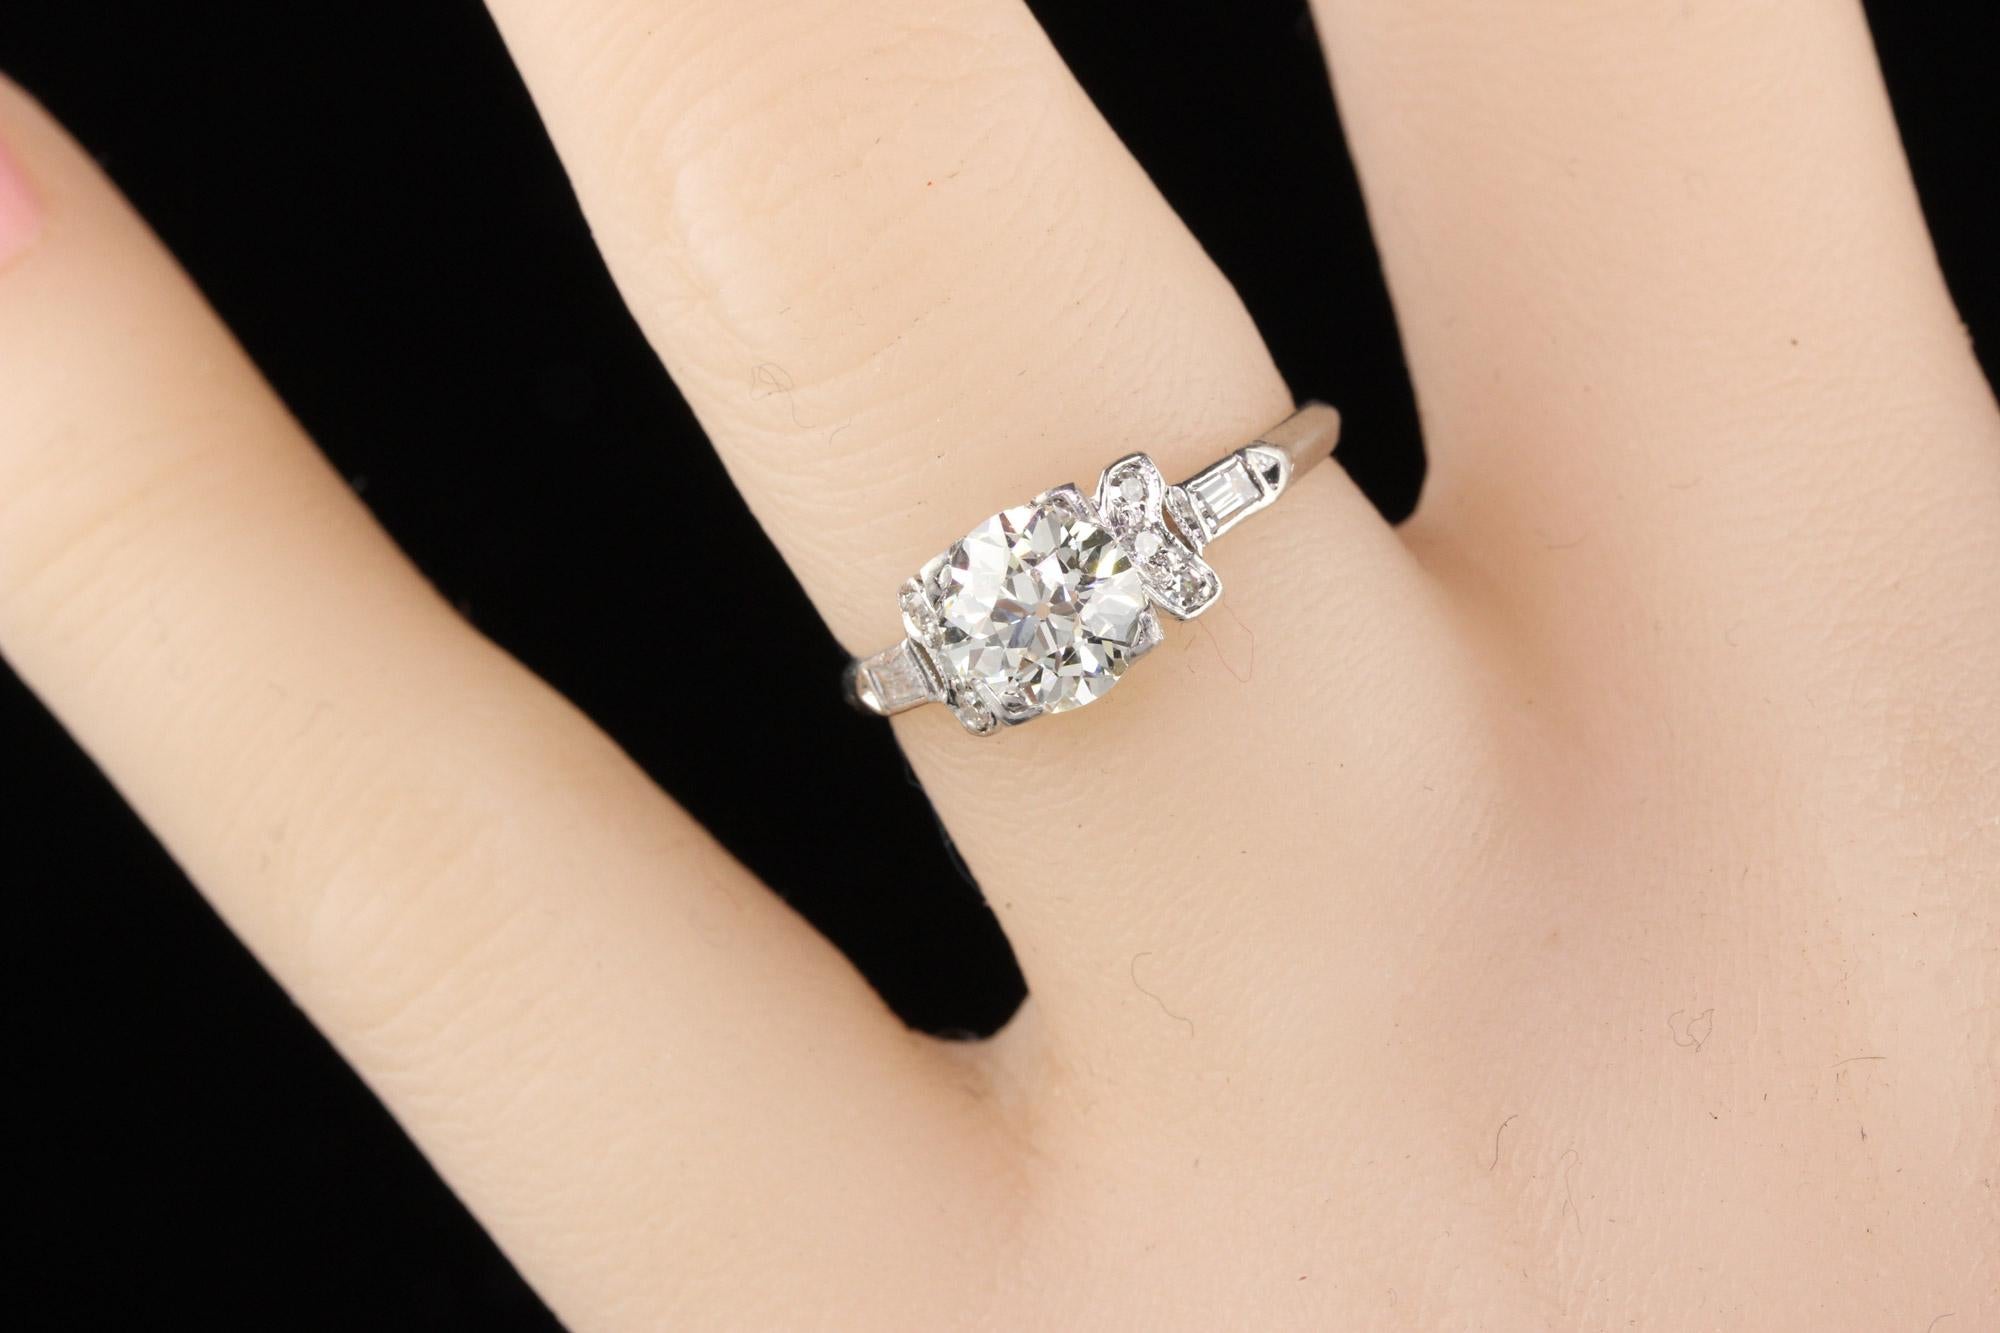 Antique Art Deco Platinum Diamond Engagement Ring 1